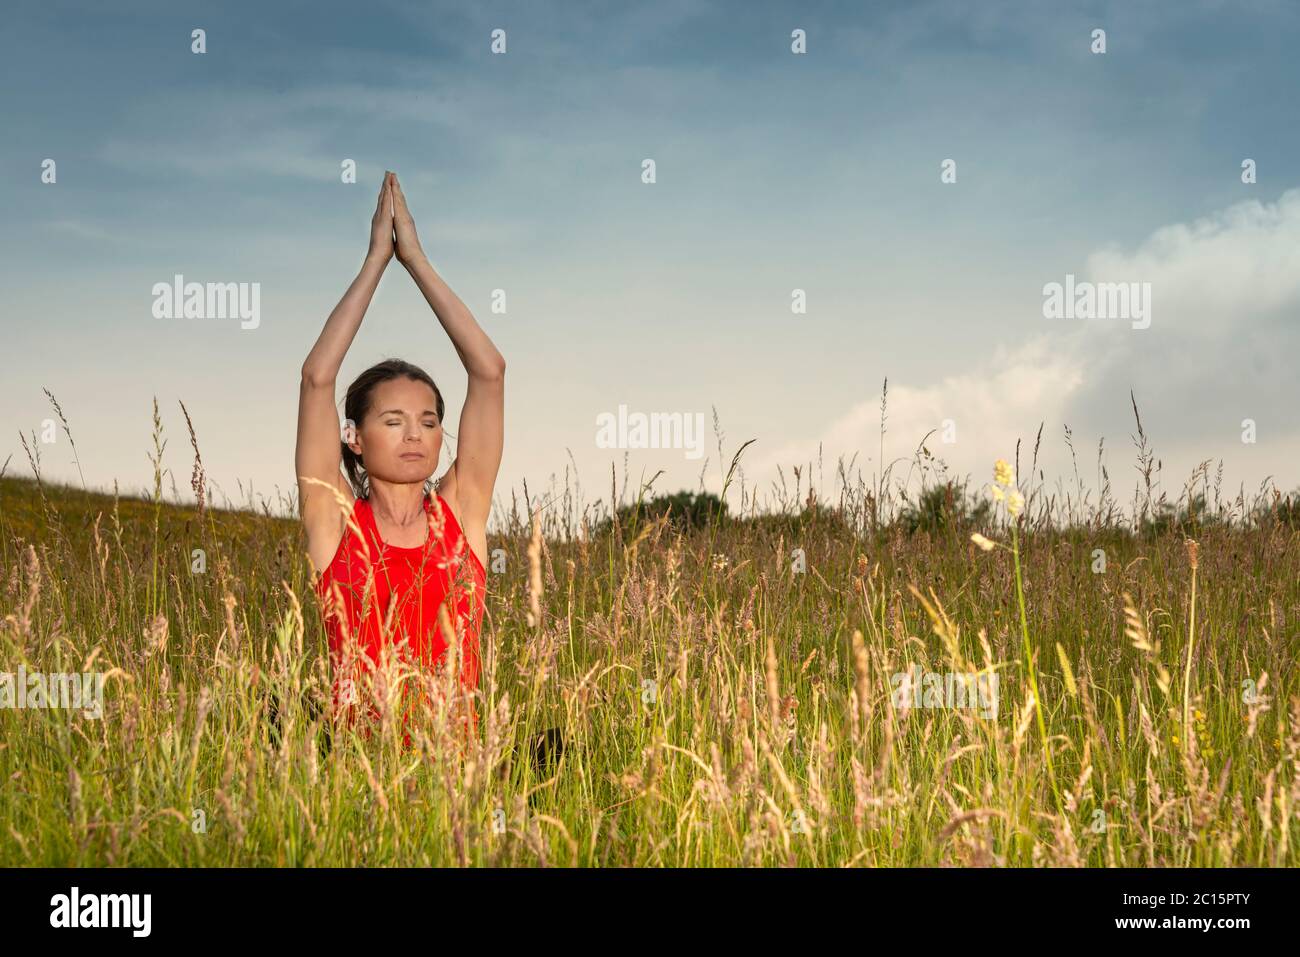 Frau praktiziert Yoga in einem Feld von wilden Blumen und Gras, gesunde Lebensweise Konzept. Stockfoto